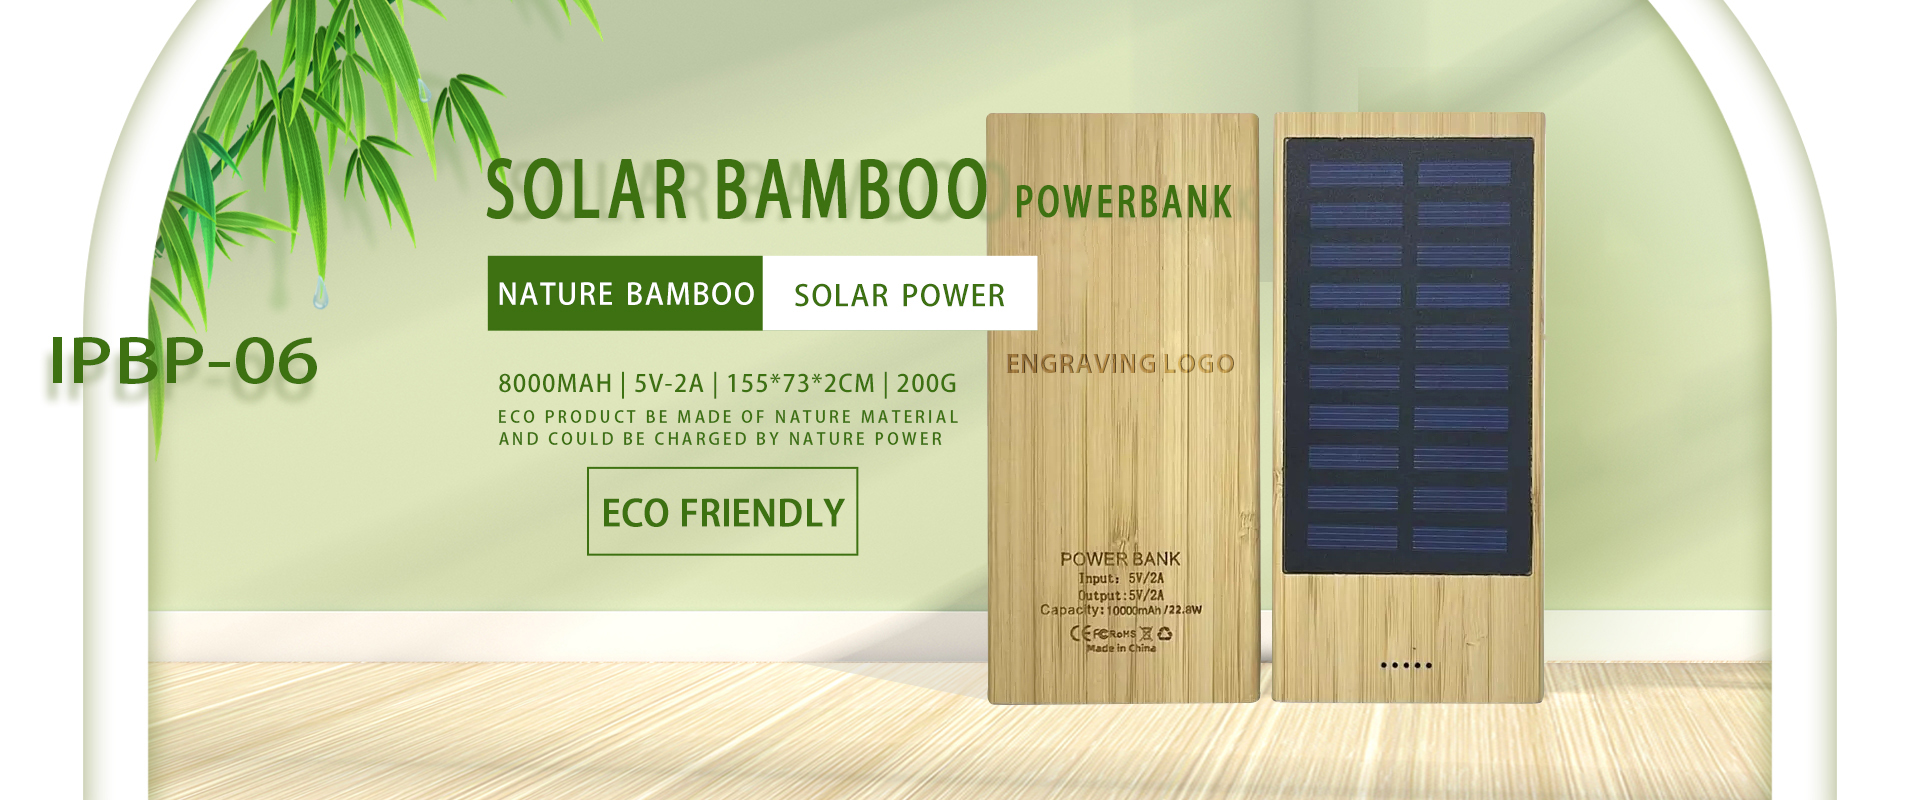 Solar bamboo power bank